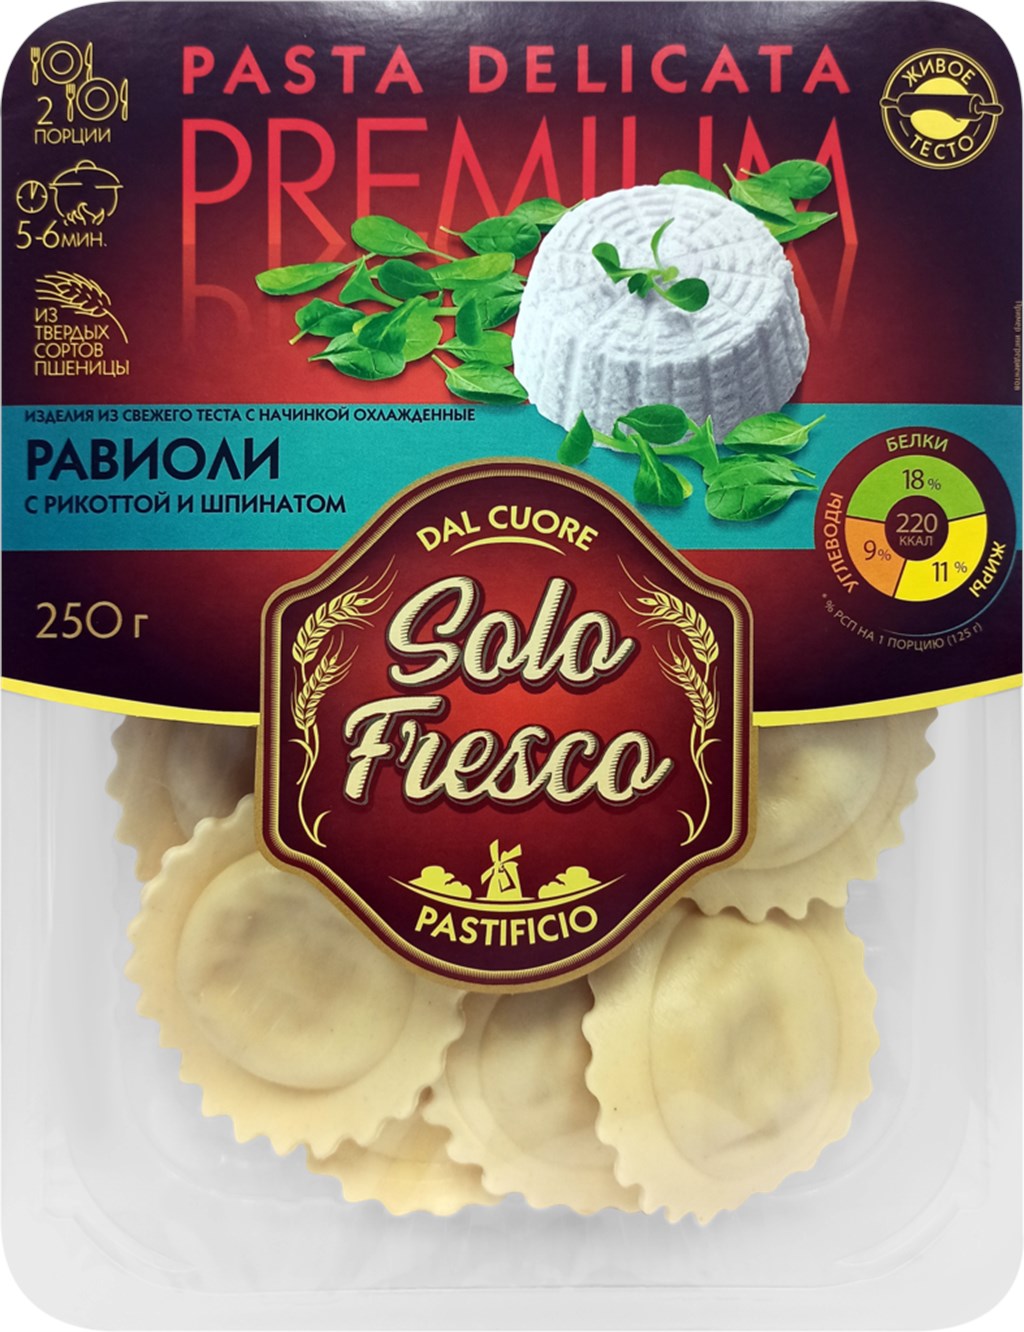 Равиоли Solo Fresco с рикоттой и шпинатом из свежего теста 250 г